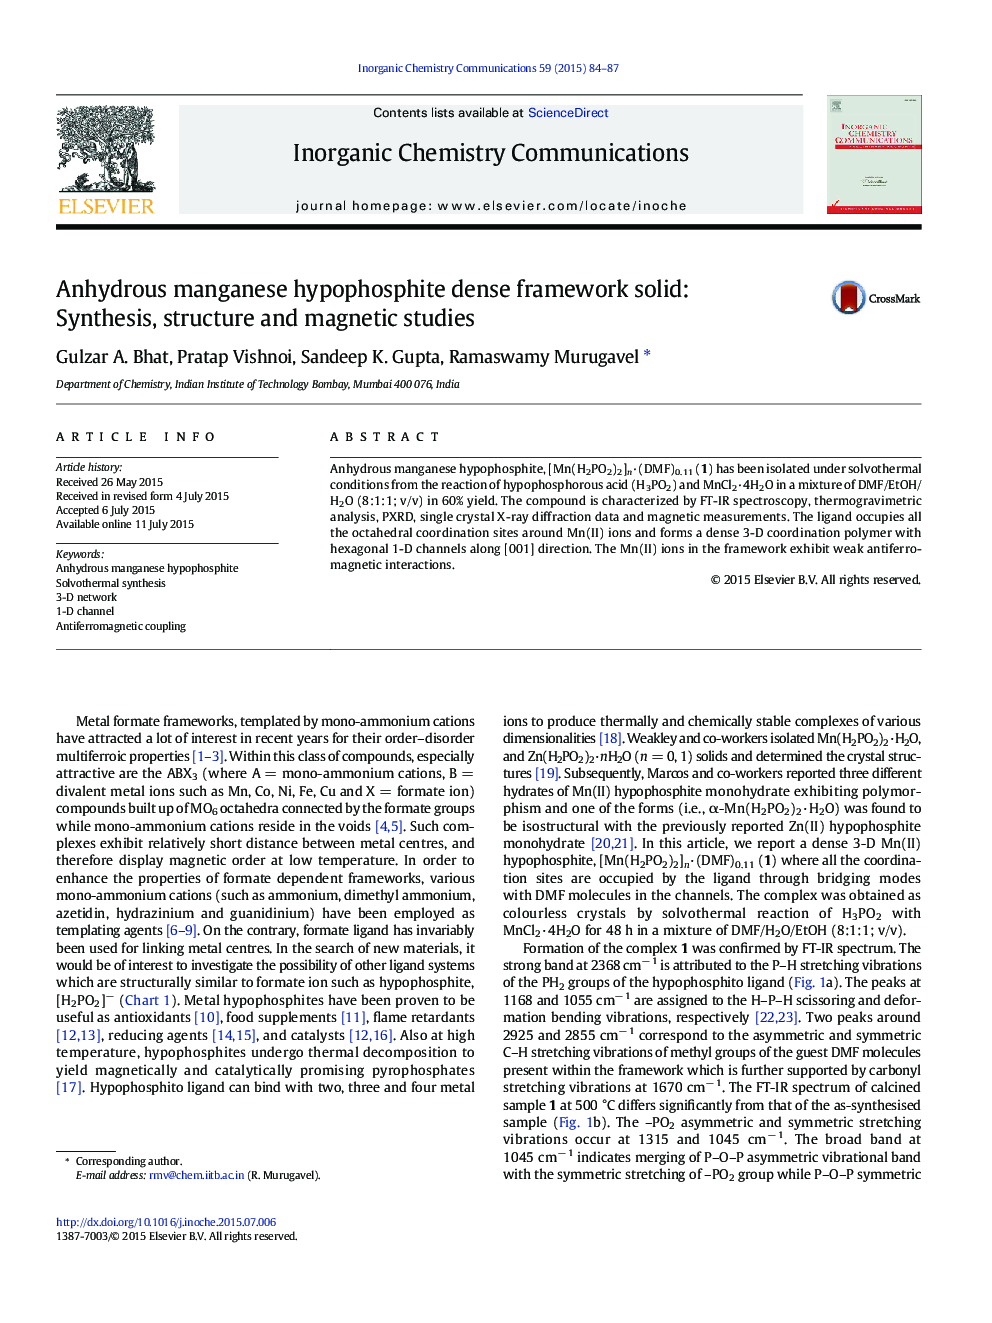 چگالی کم هیپوفسفید منگنز بدون چربی جامد: سنتز، ساختار و مطالعات مغناطیسی 